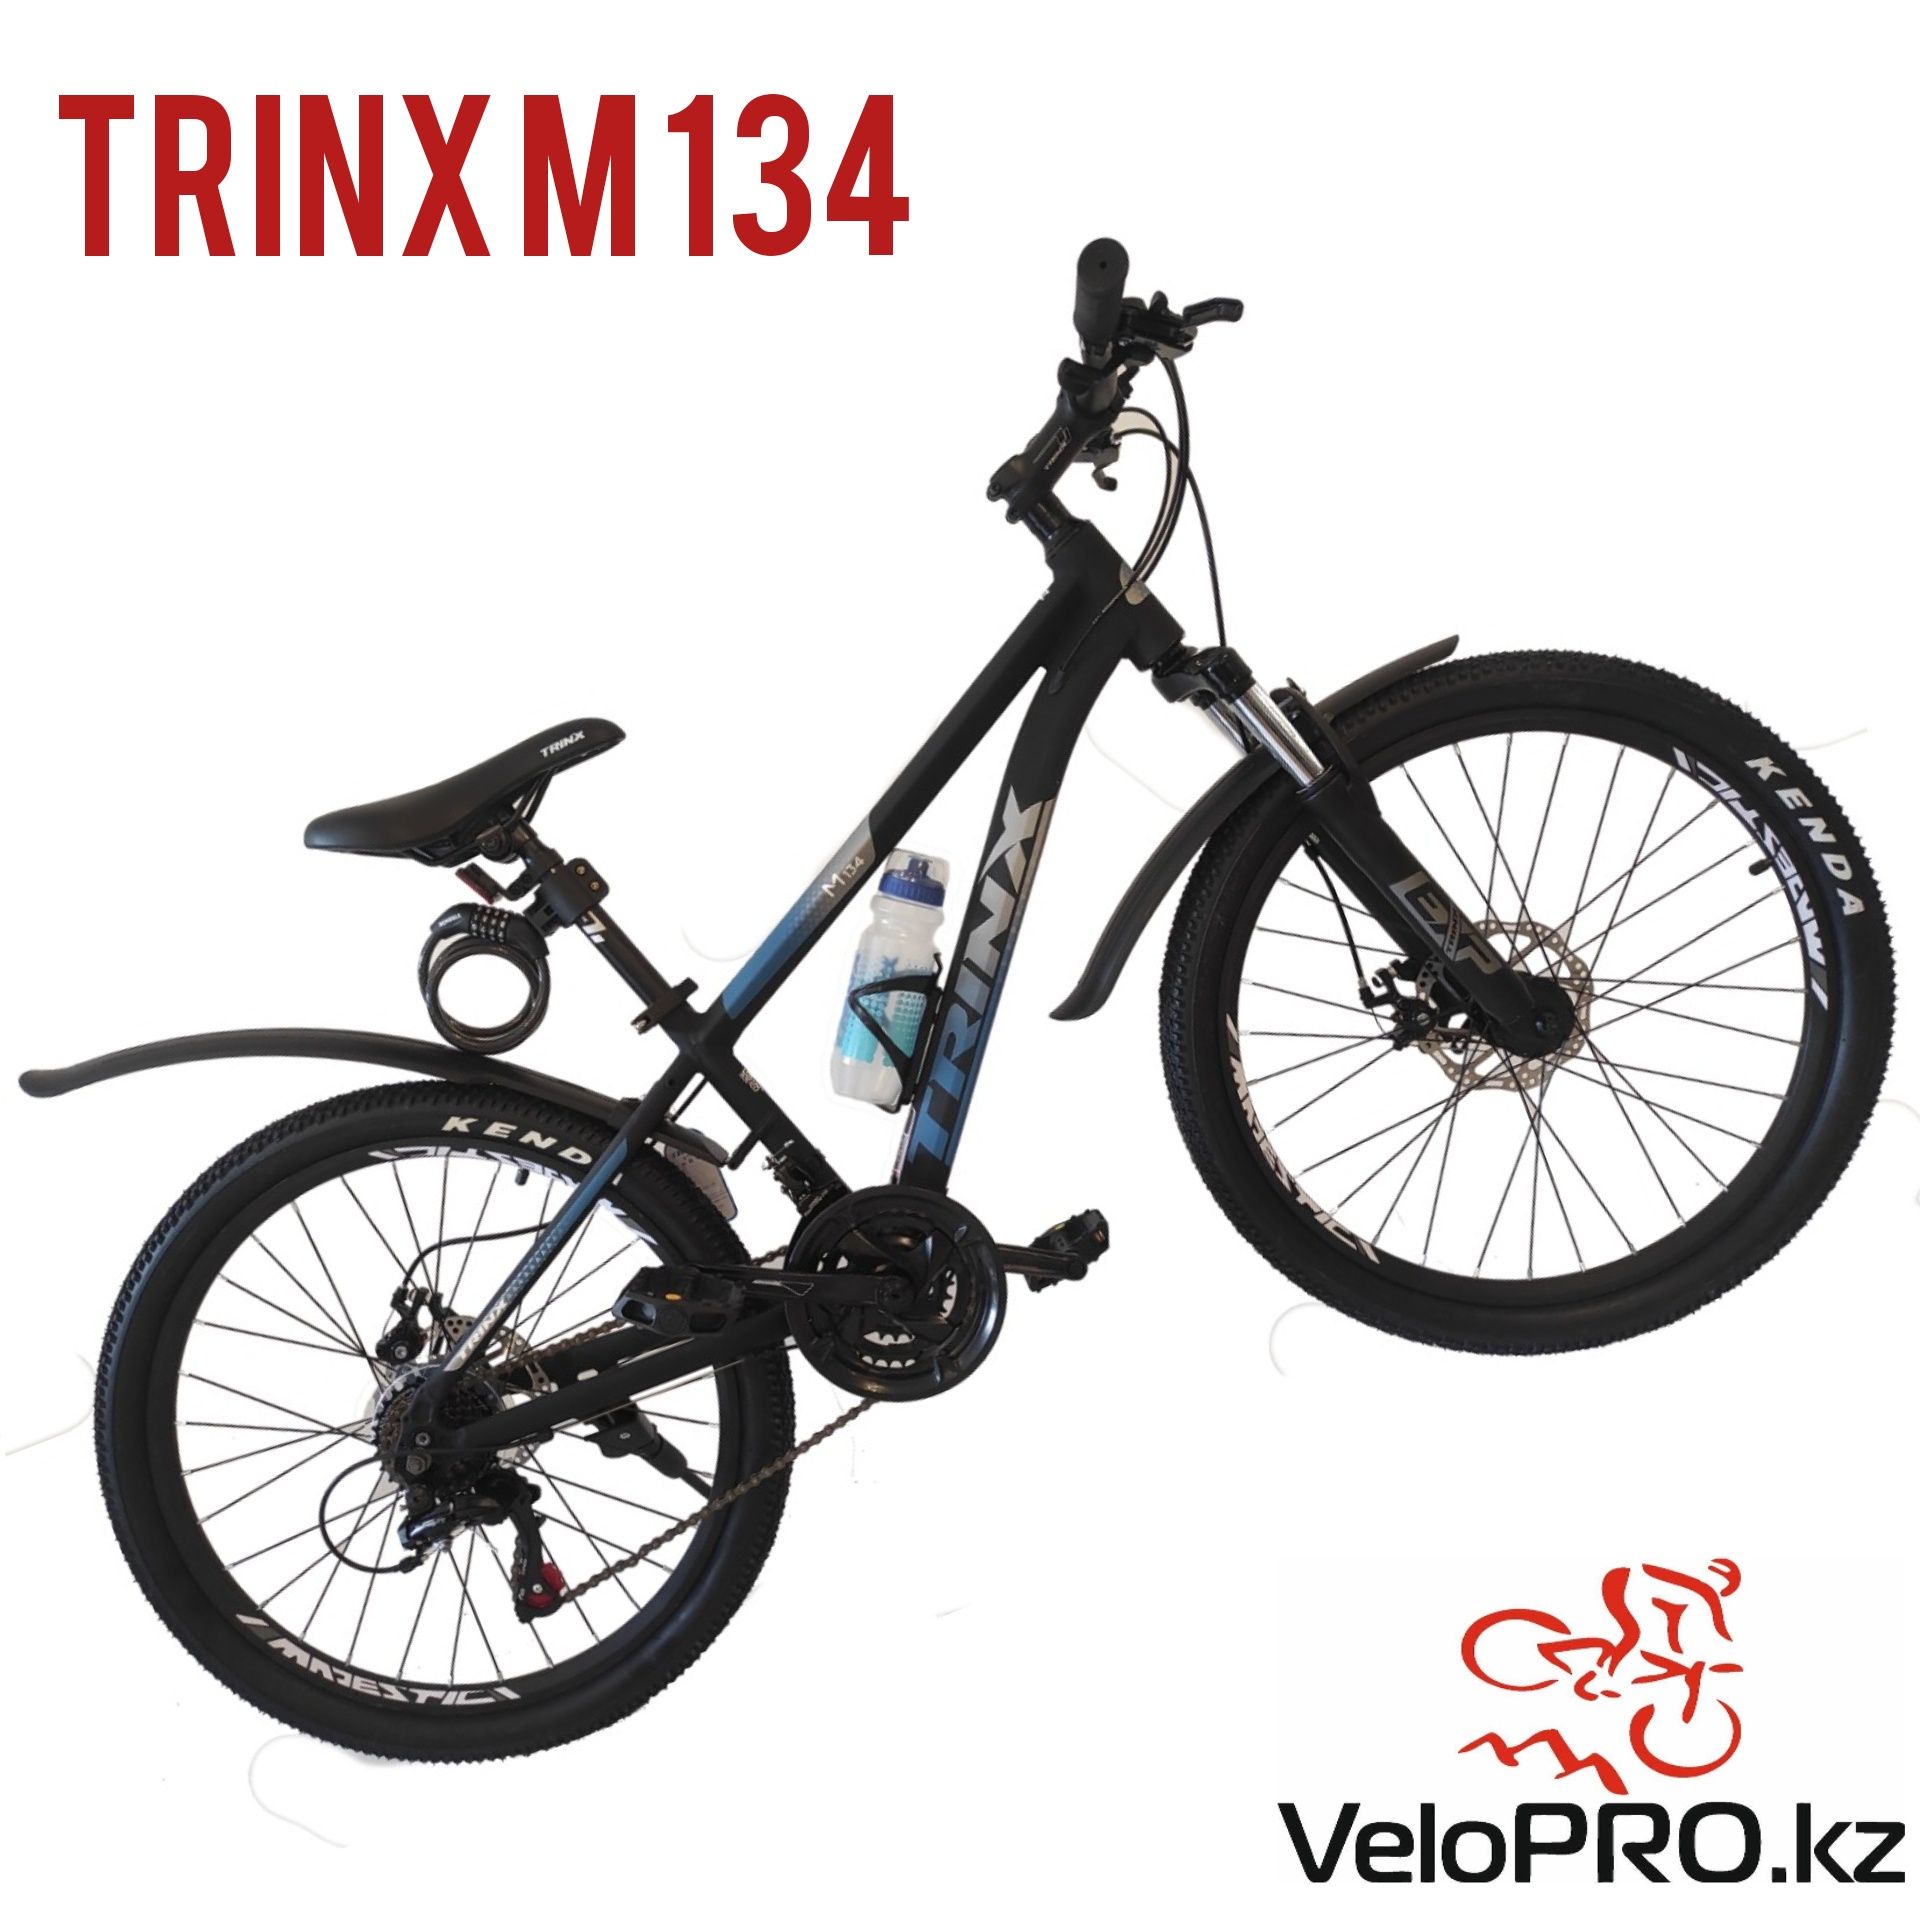 Подростковый велосипед Trinx m134. 13 рама. 24 колеса. Рассрочка